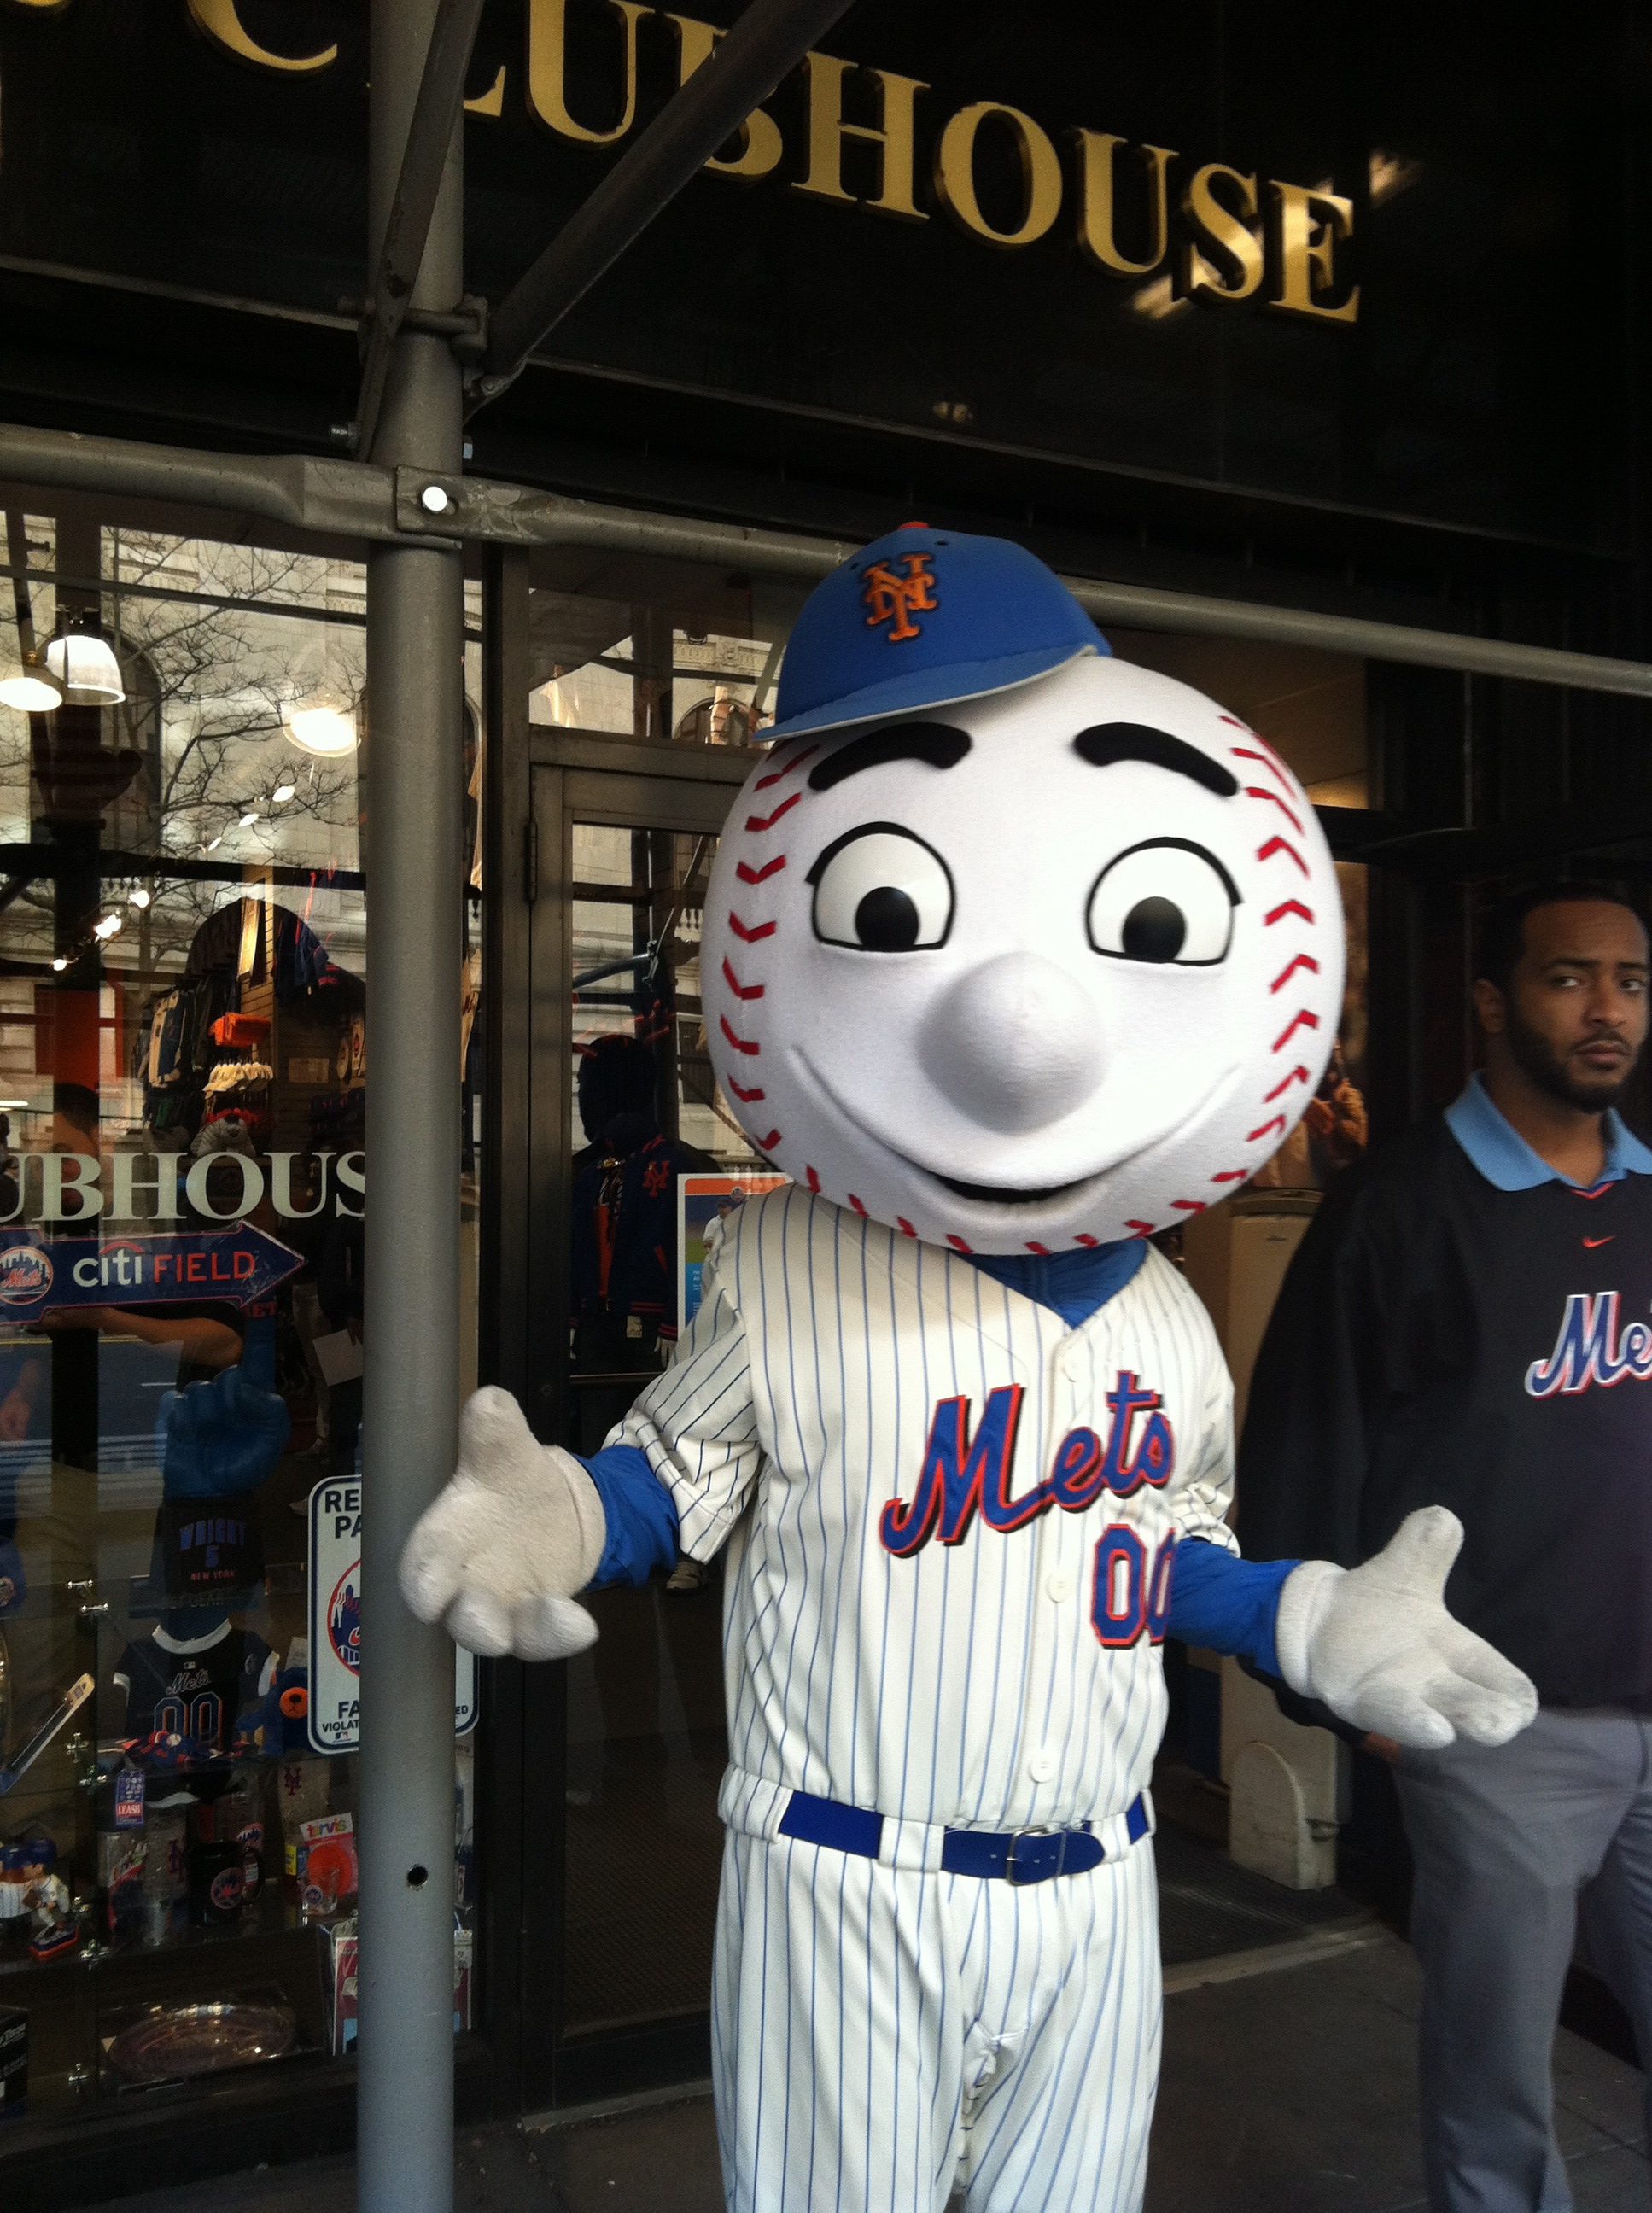 Mr met 2. Магазин Mets. Mr. Mascot.